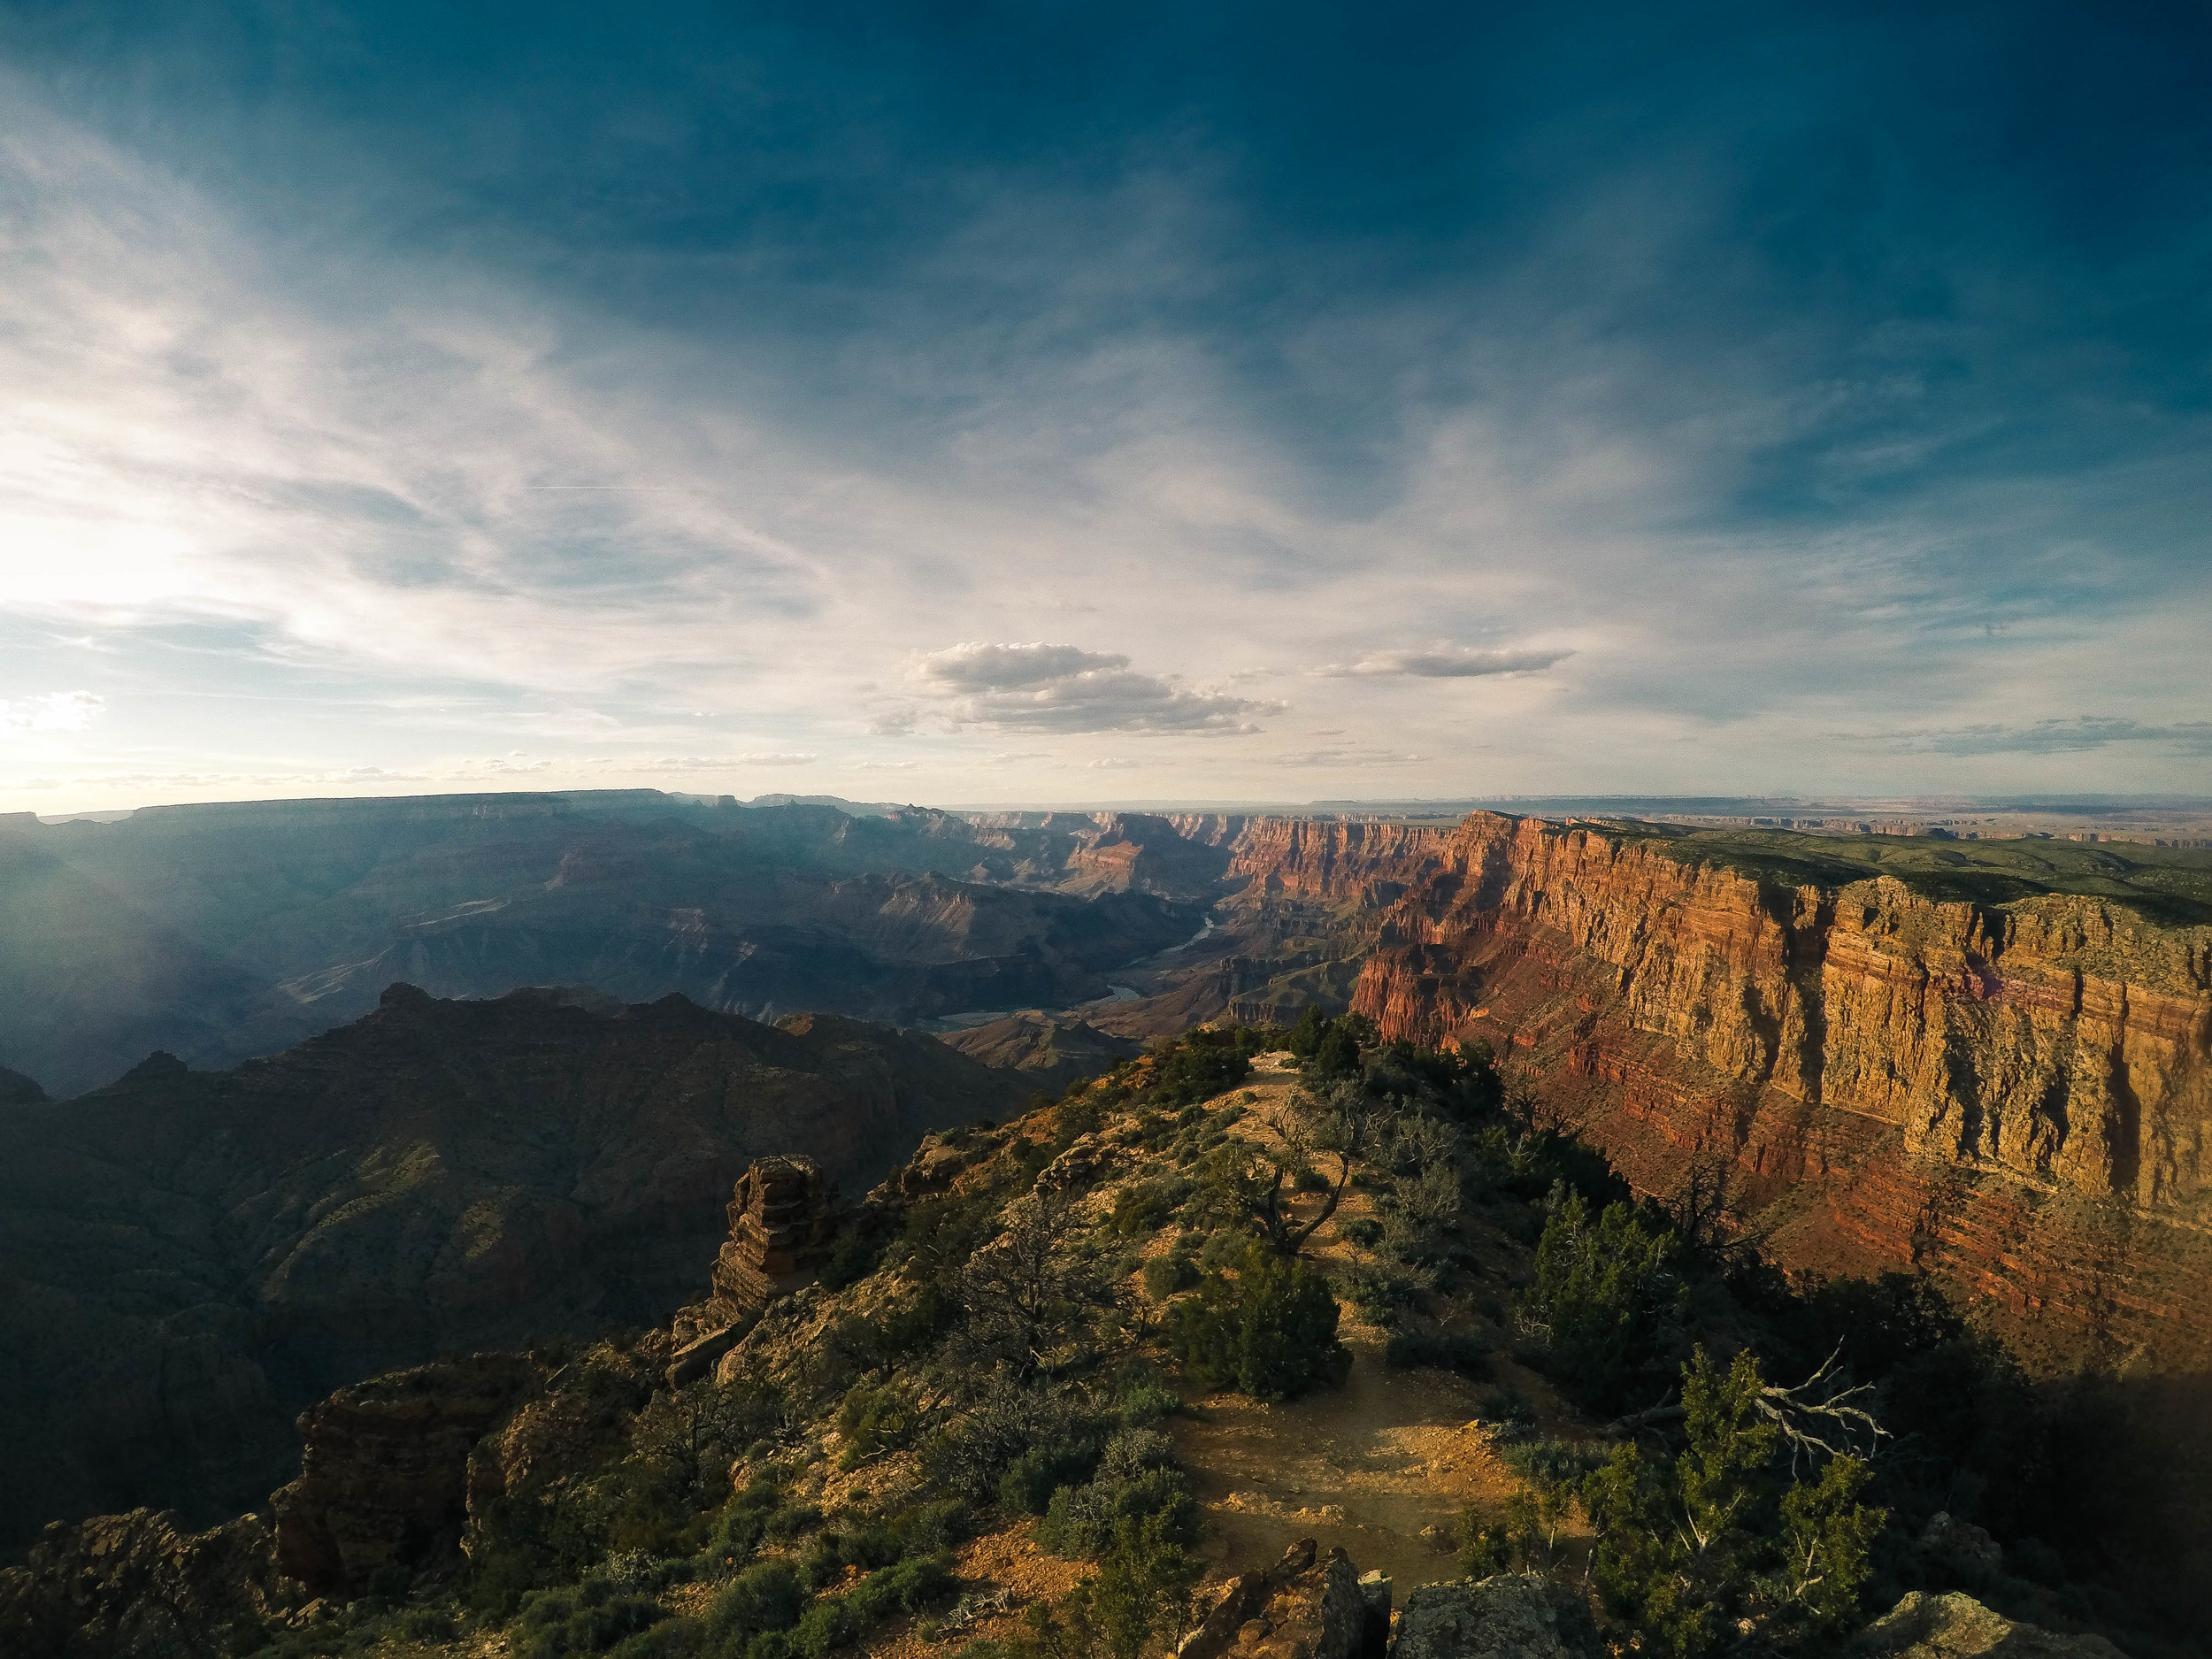   desert view&nbsp;  | Grand Canyon, AZ  